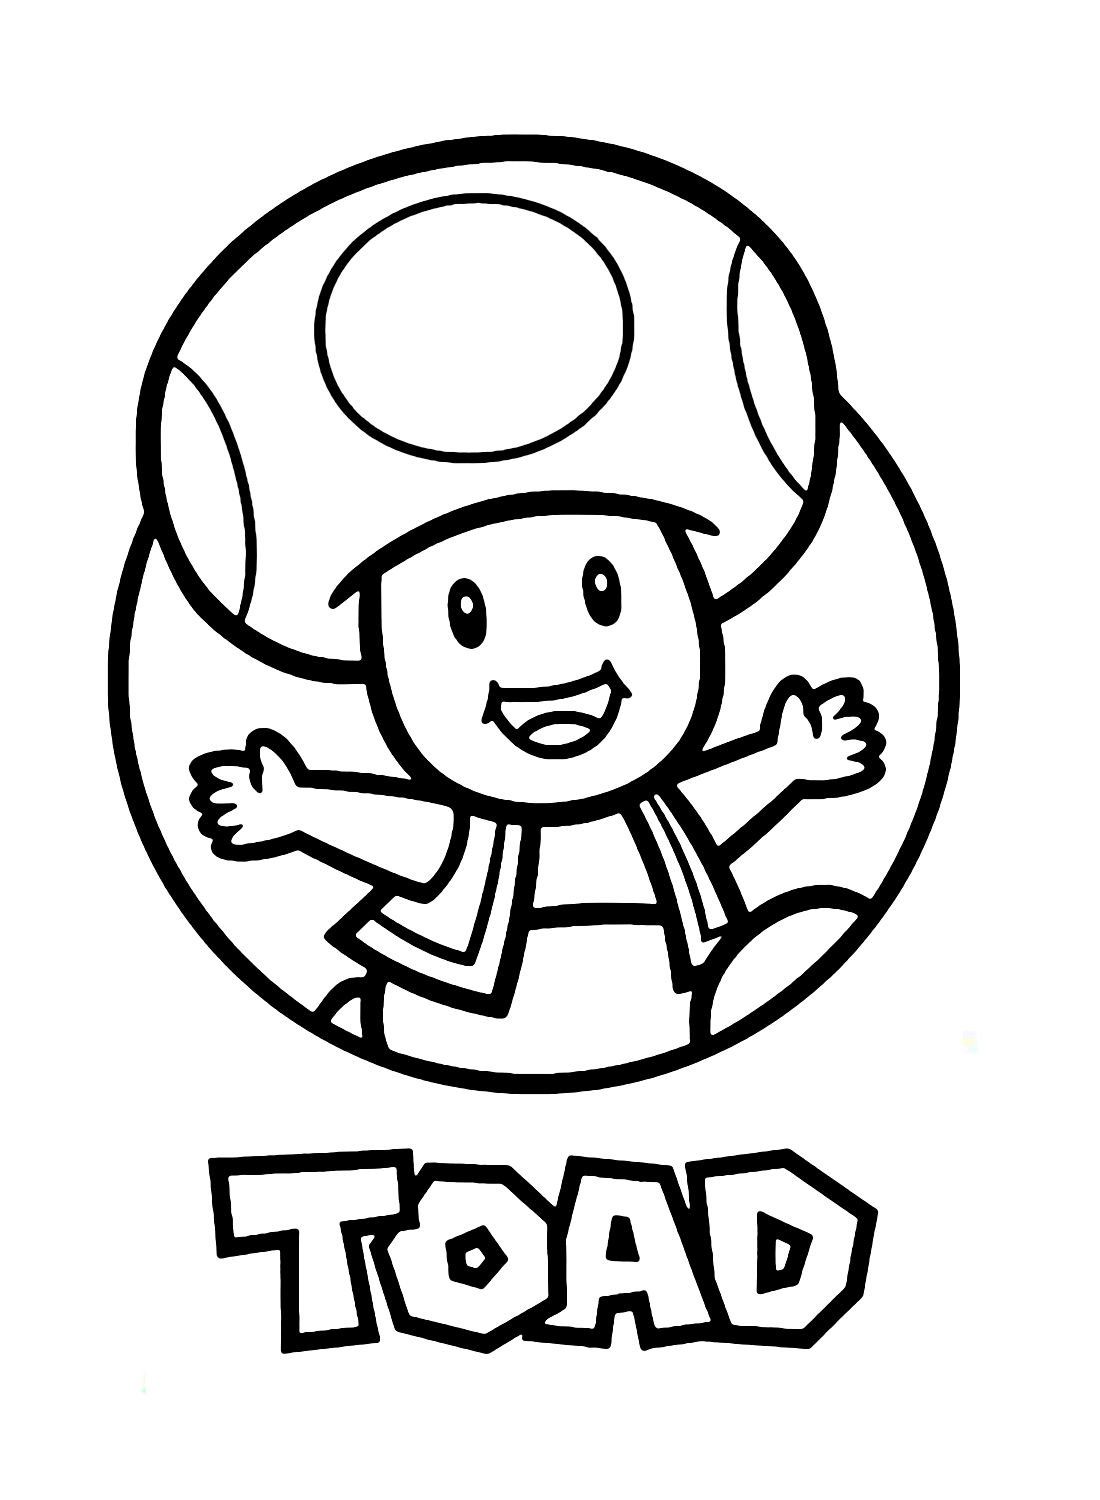 Sapo Super Mario de Toad Mario